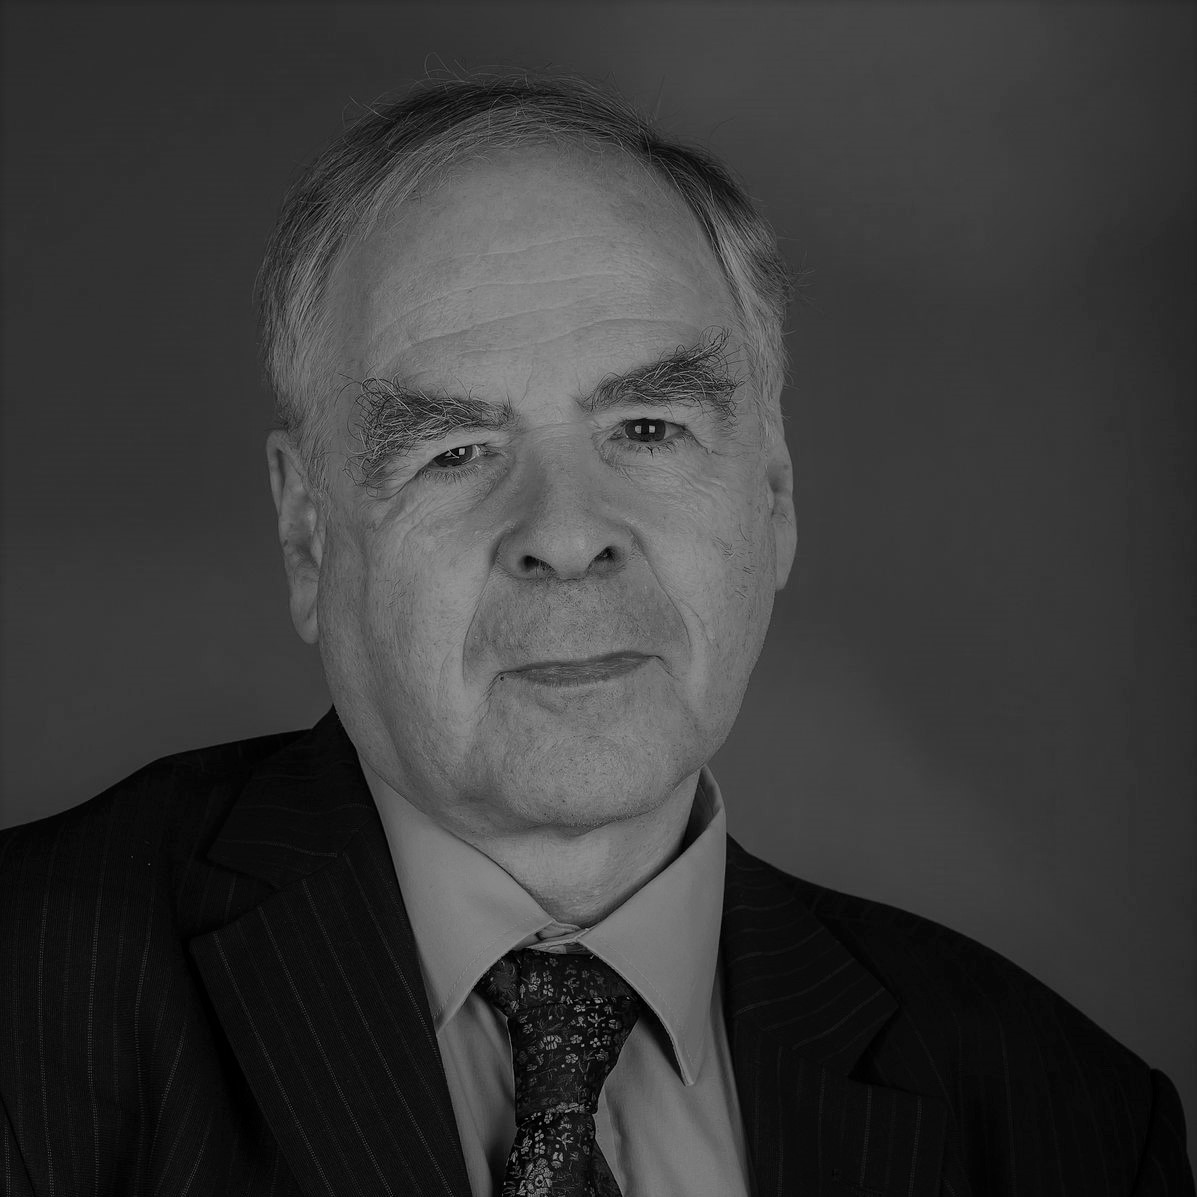 György Andras Schöpflin